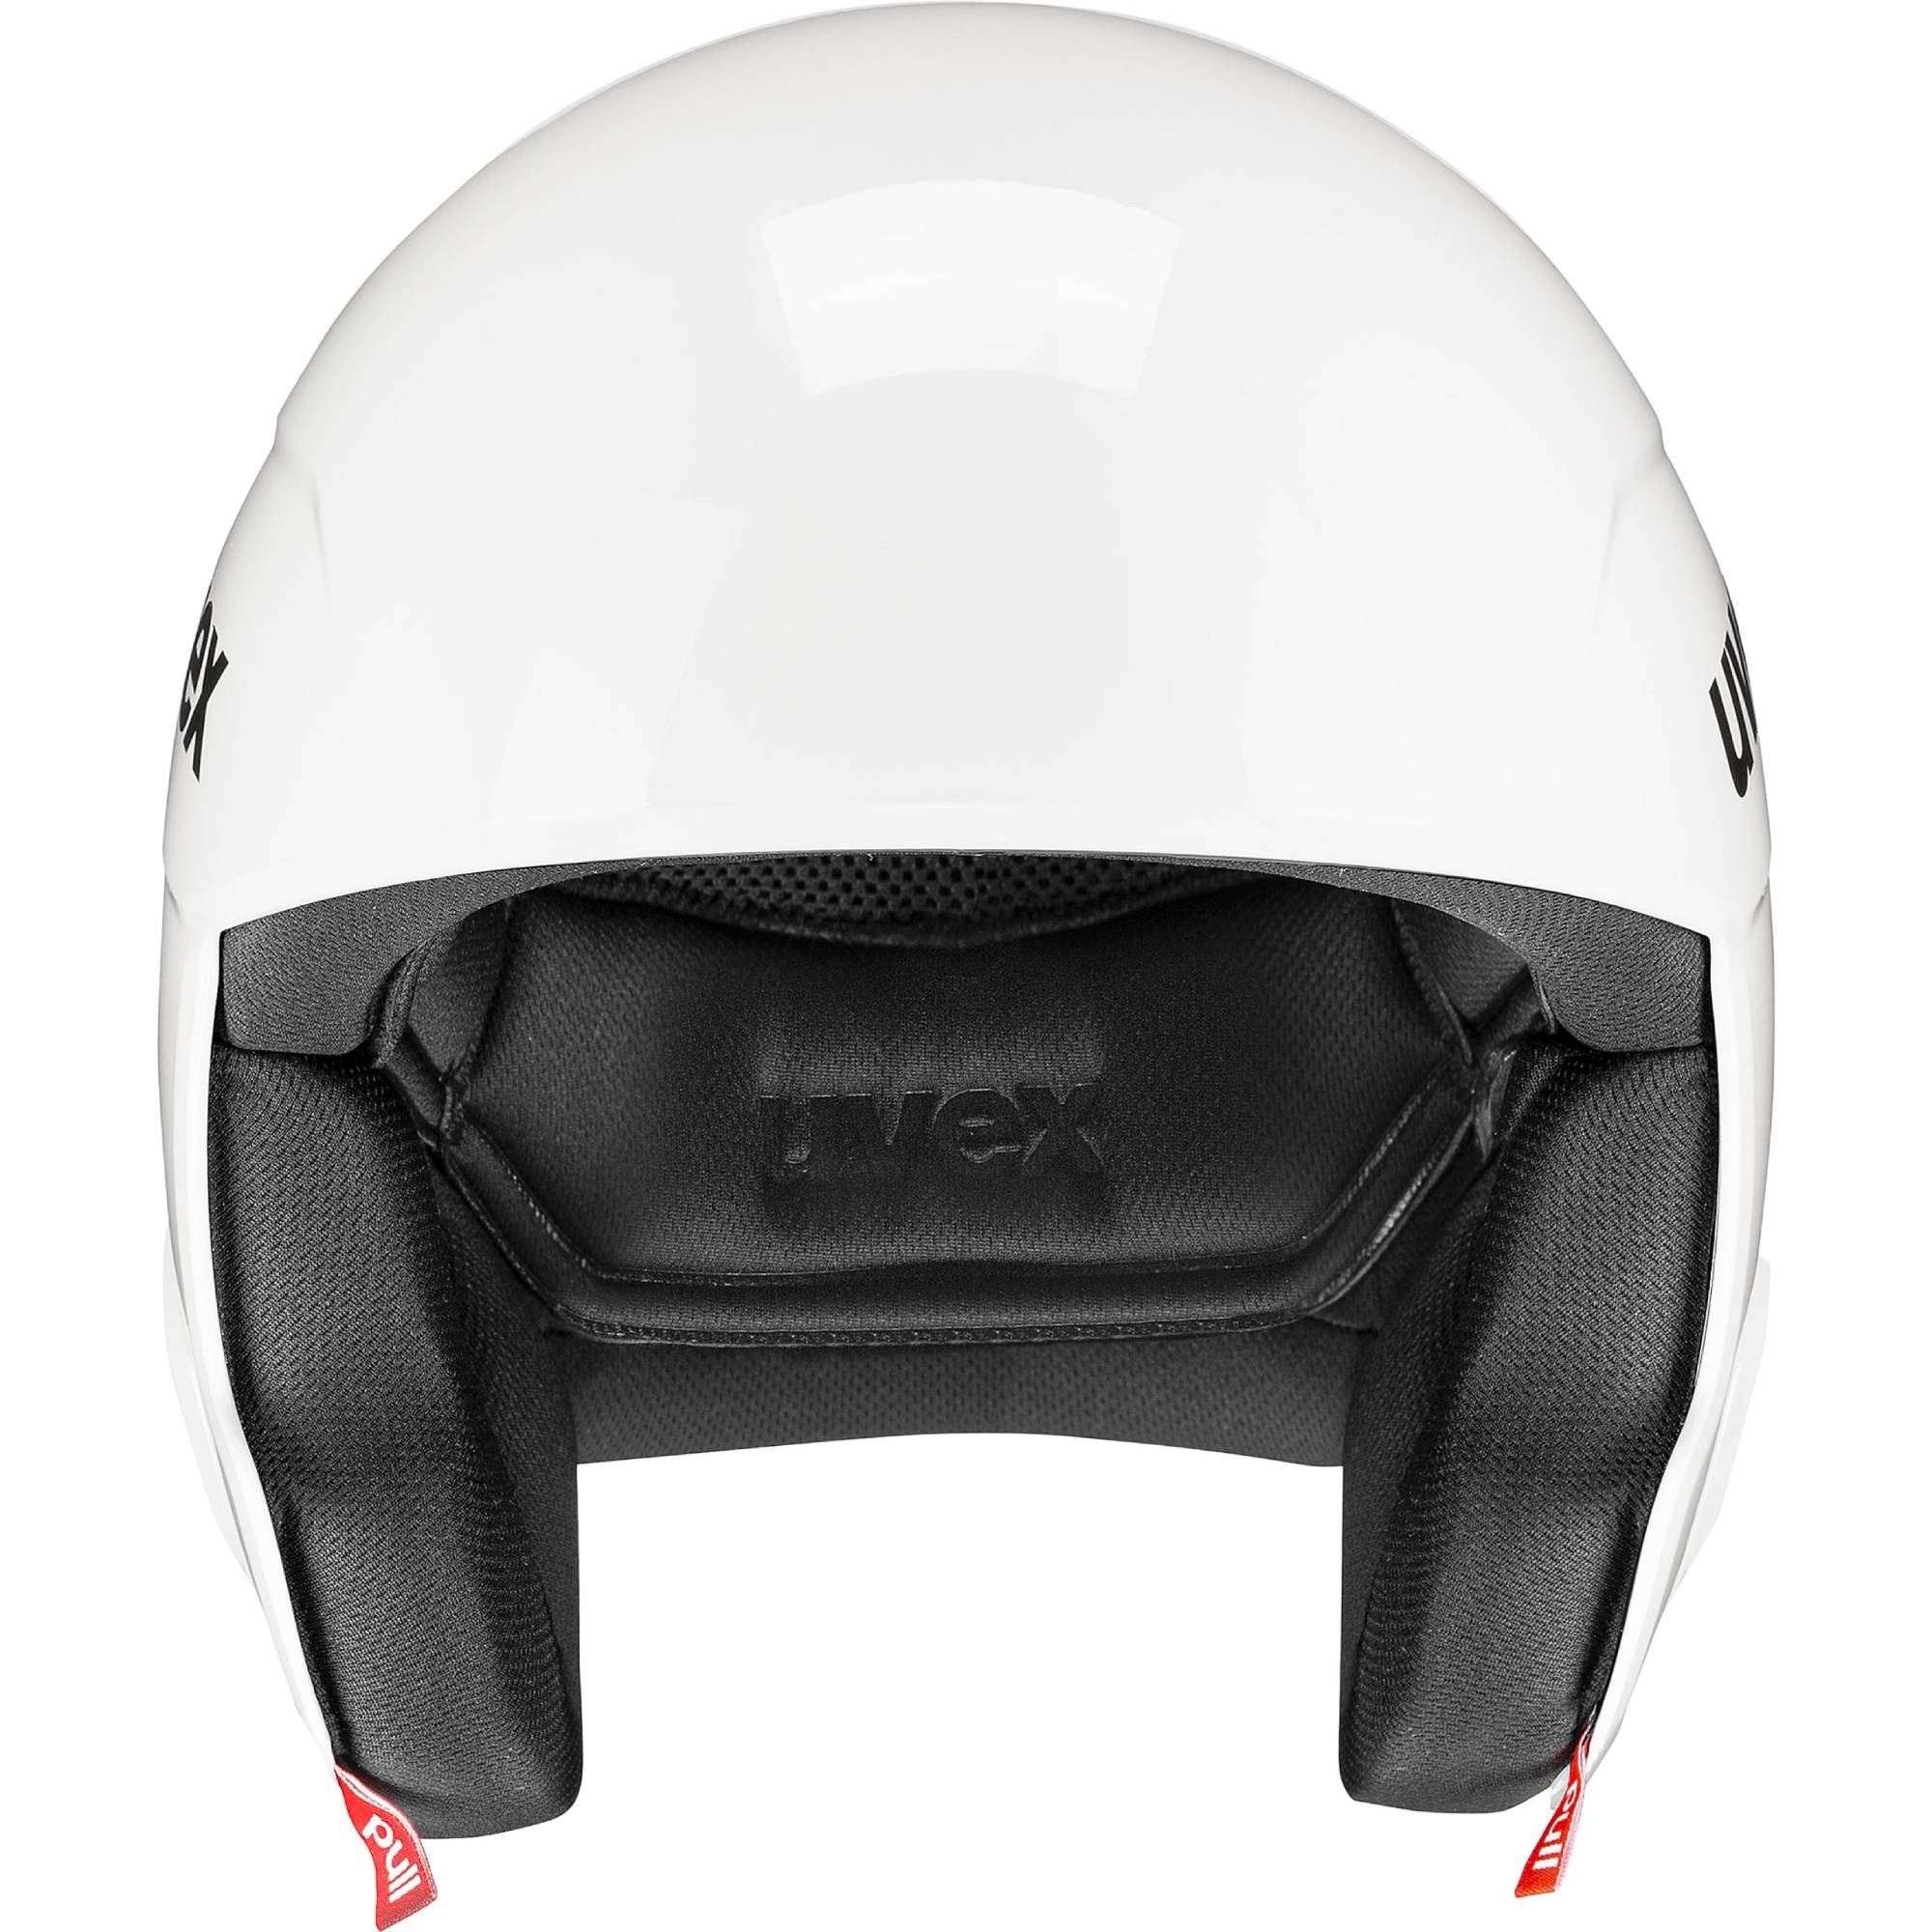 大特価新品uvex race + all white スキーヘルメット スキー